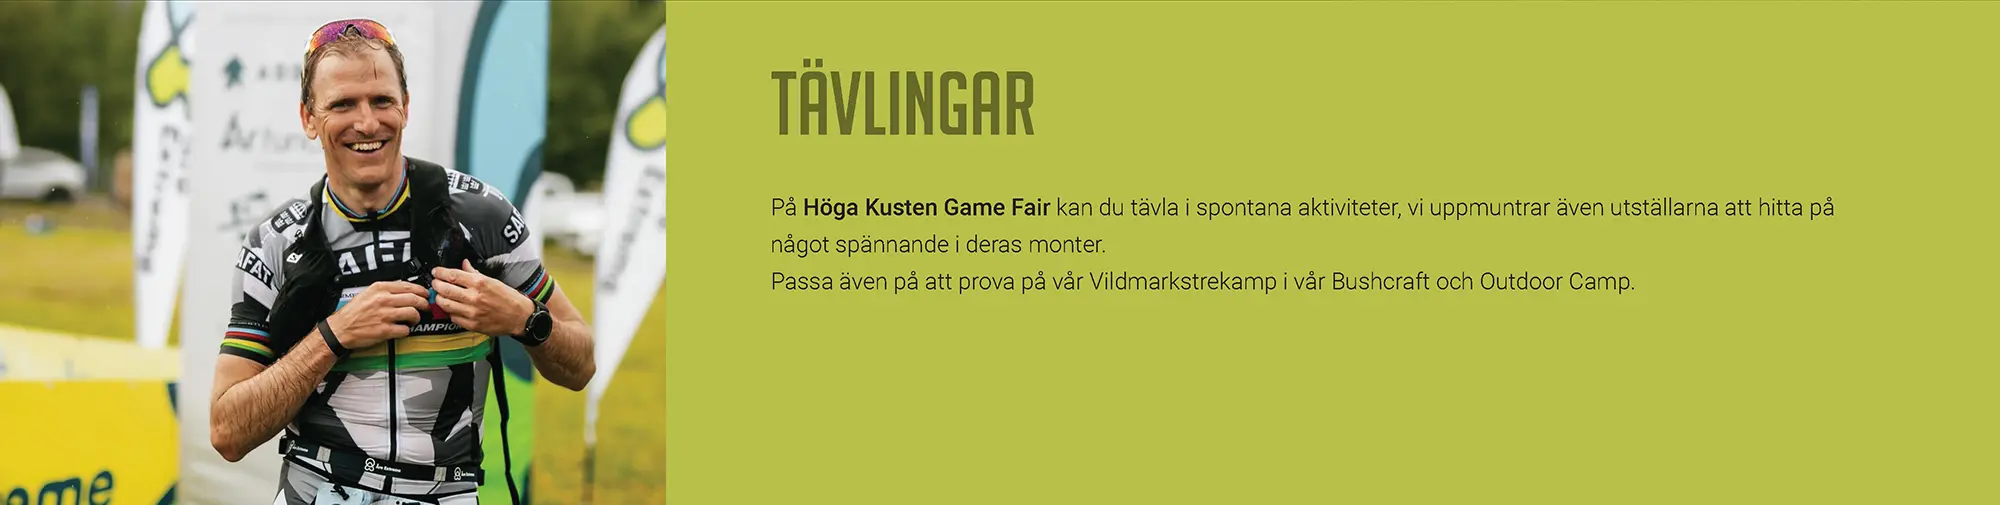 BAE System, Hägglunds kommer till Höga Kusten Game Fair. Adventure Racing World Champion, John Karlsson från SAFAT kommer till Höga Kusten Game Fair. Försvarsmakten och Hemvärnet kommer till Höga Kusten Game Fair. 